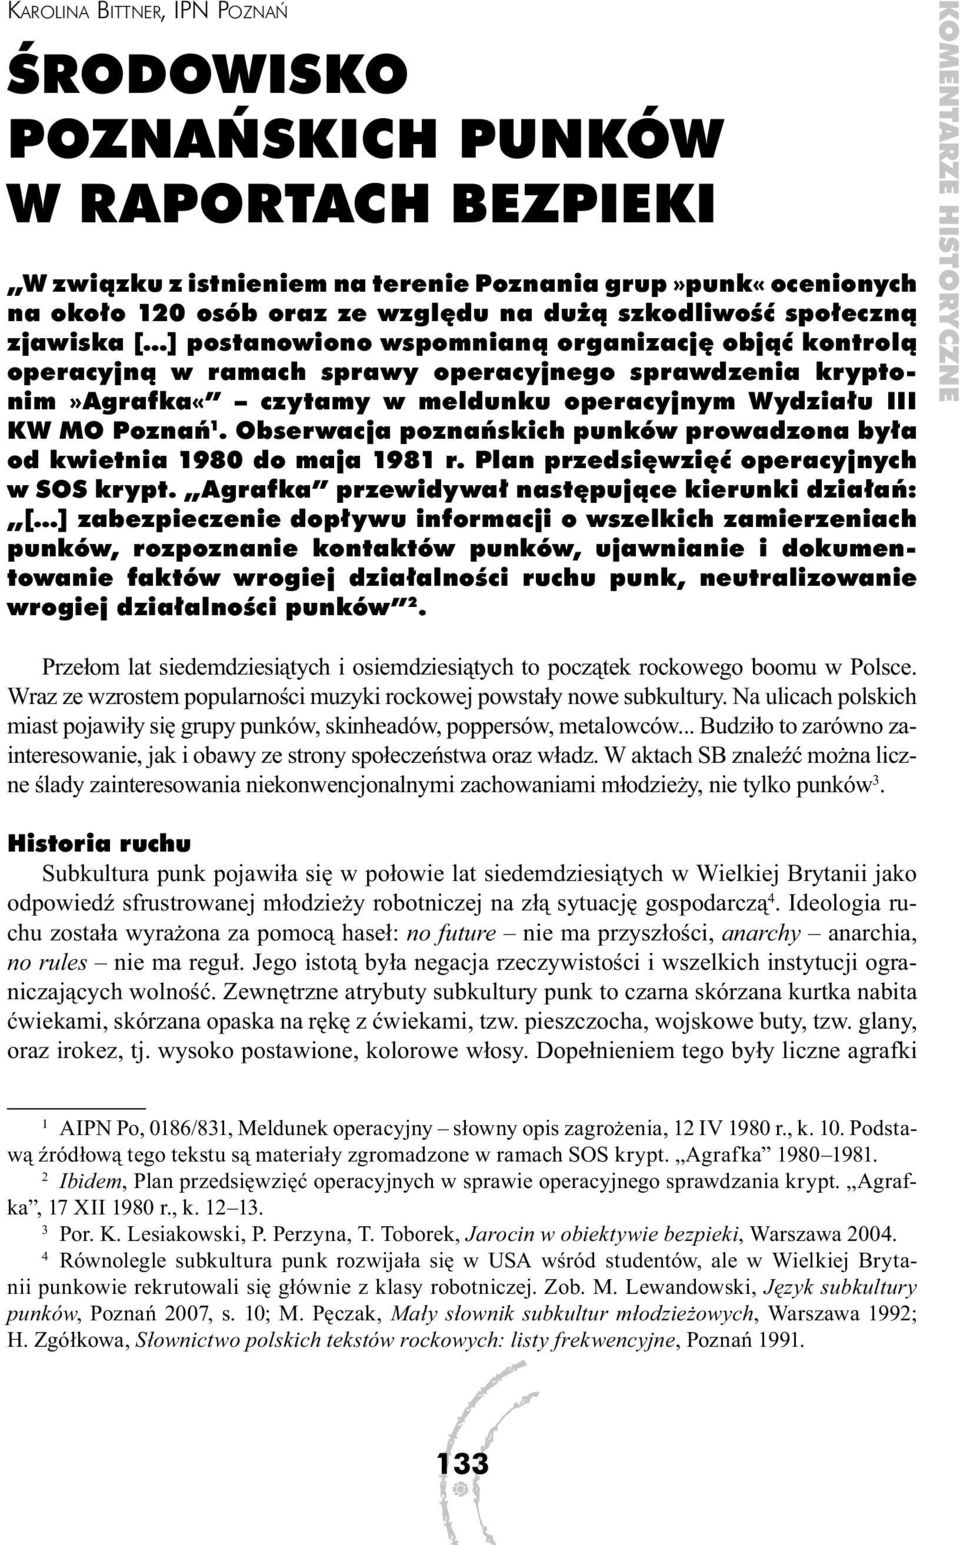 Poznań 1. Obserwacja poznańskich punków prowadzona była od kwietnia 1980 do maja 1981 r. Plan przedsięwzięć operacyjnych w SOS krypt.